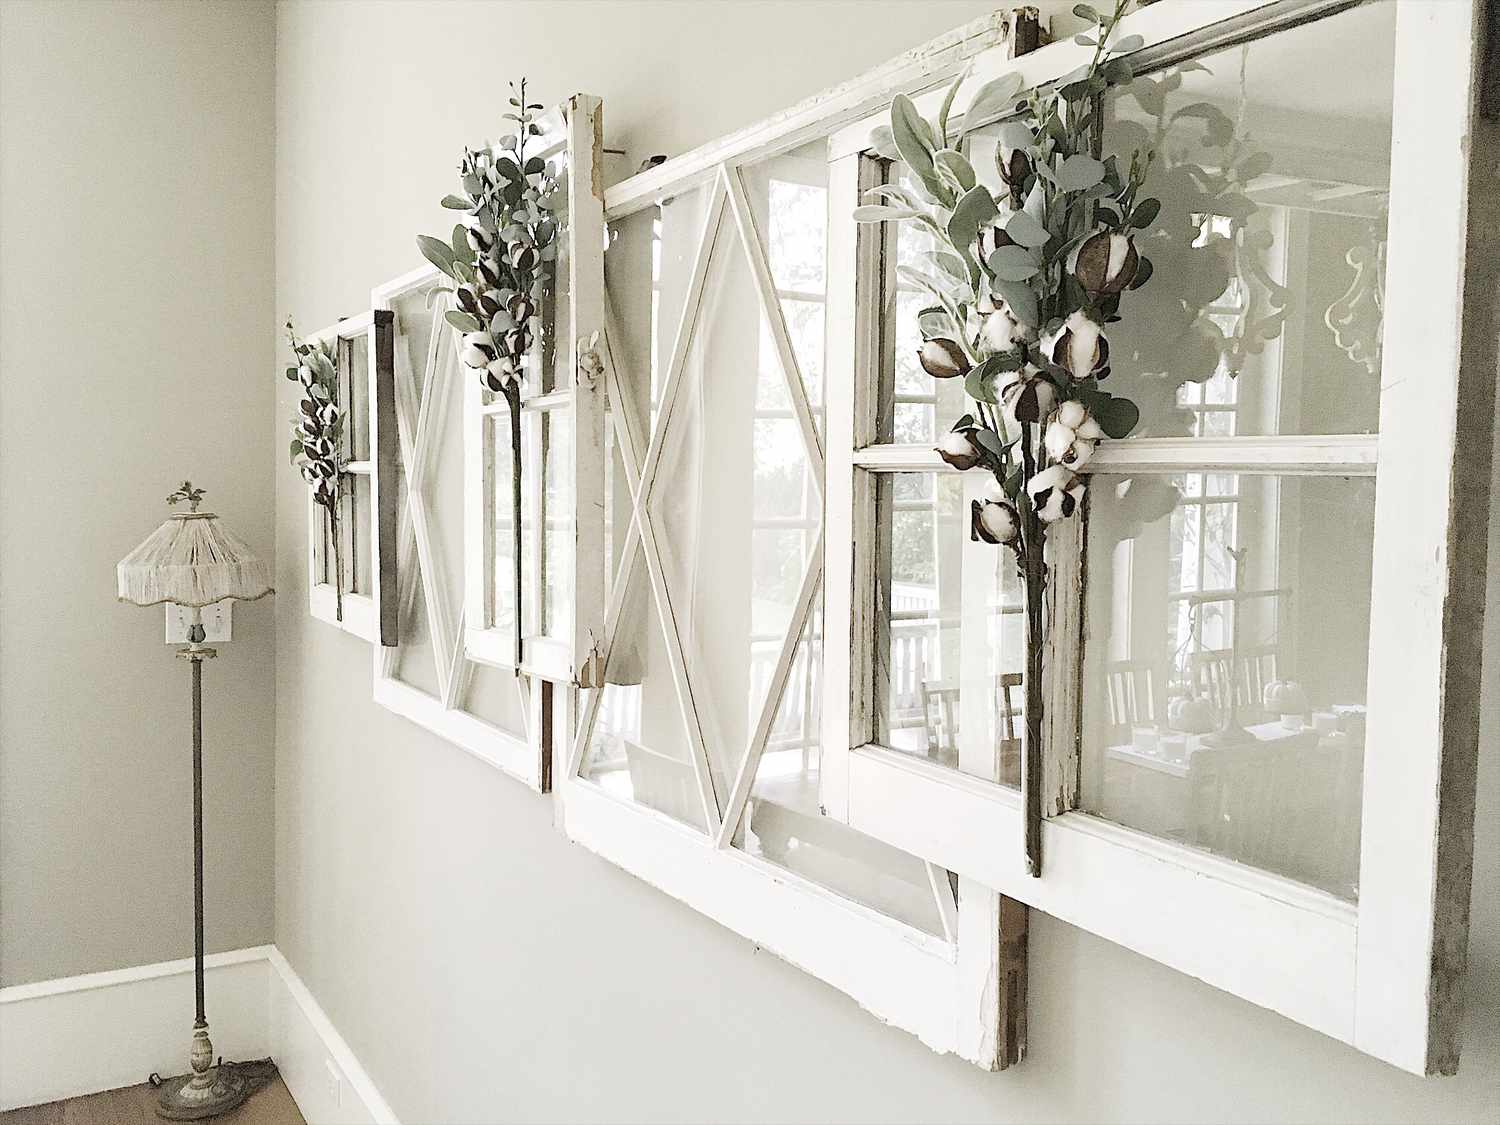 Uma ideia de decoração de moldura de janela pendurando várias janelas em uma parede